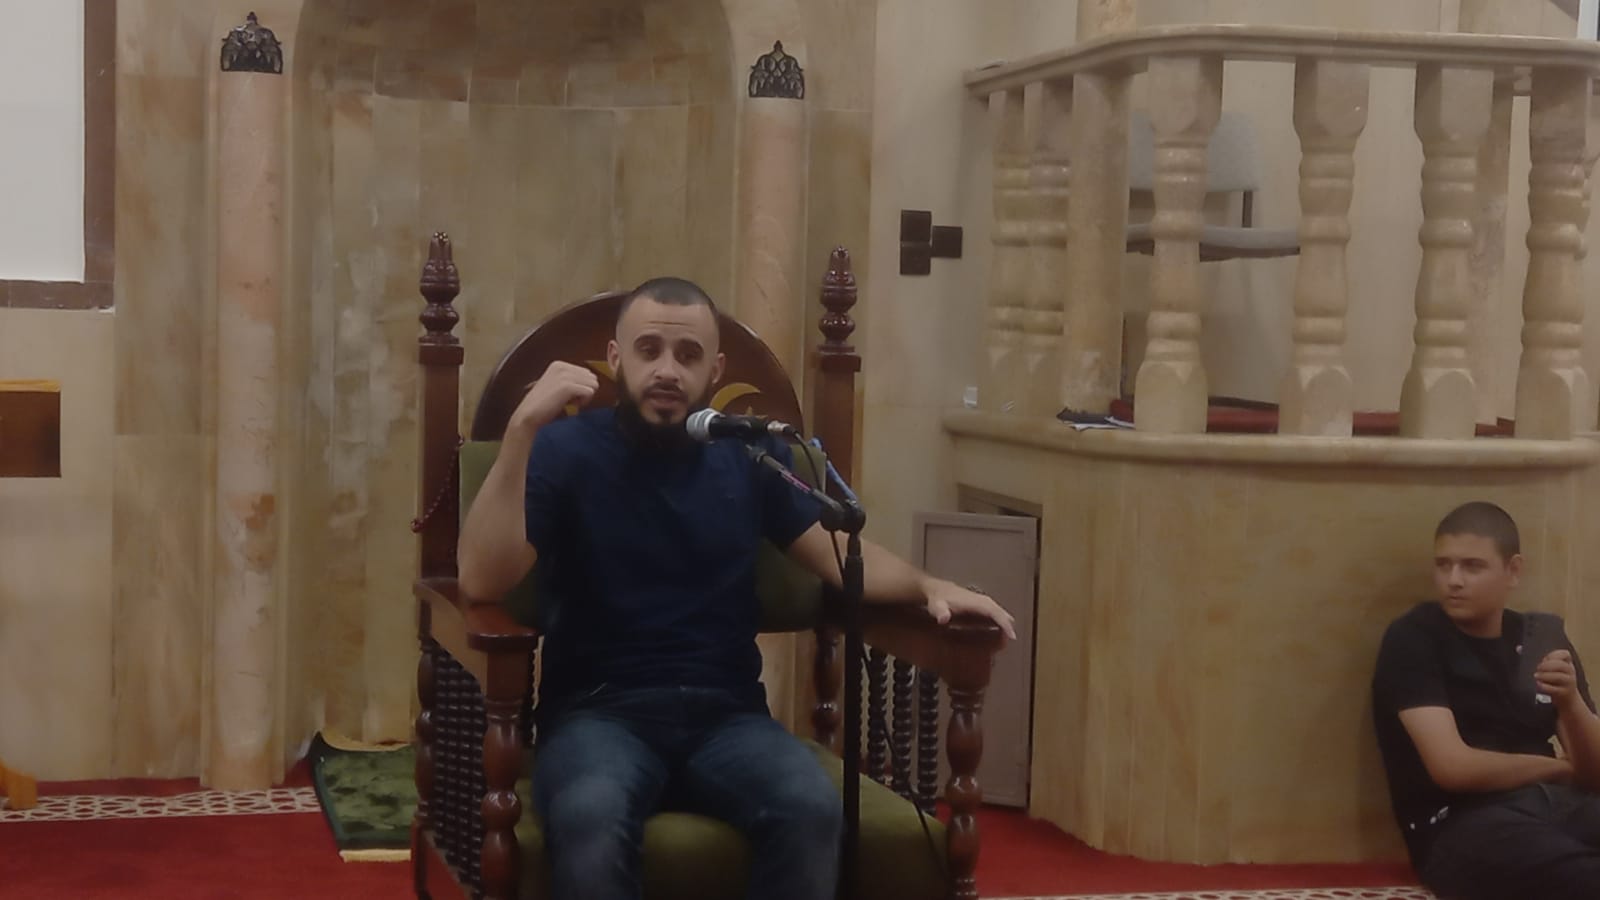  يافا: الشيخ محمد زبارقة يحل ضيفًا على مجالس النور في مسجد العجمي